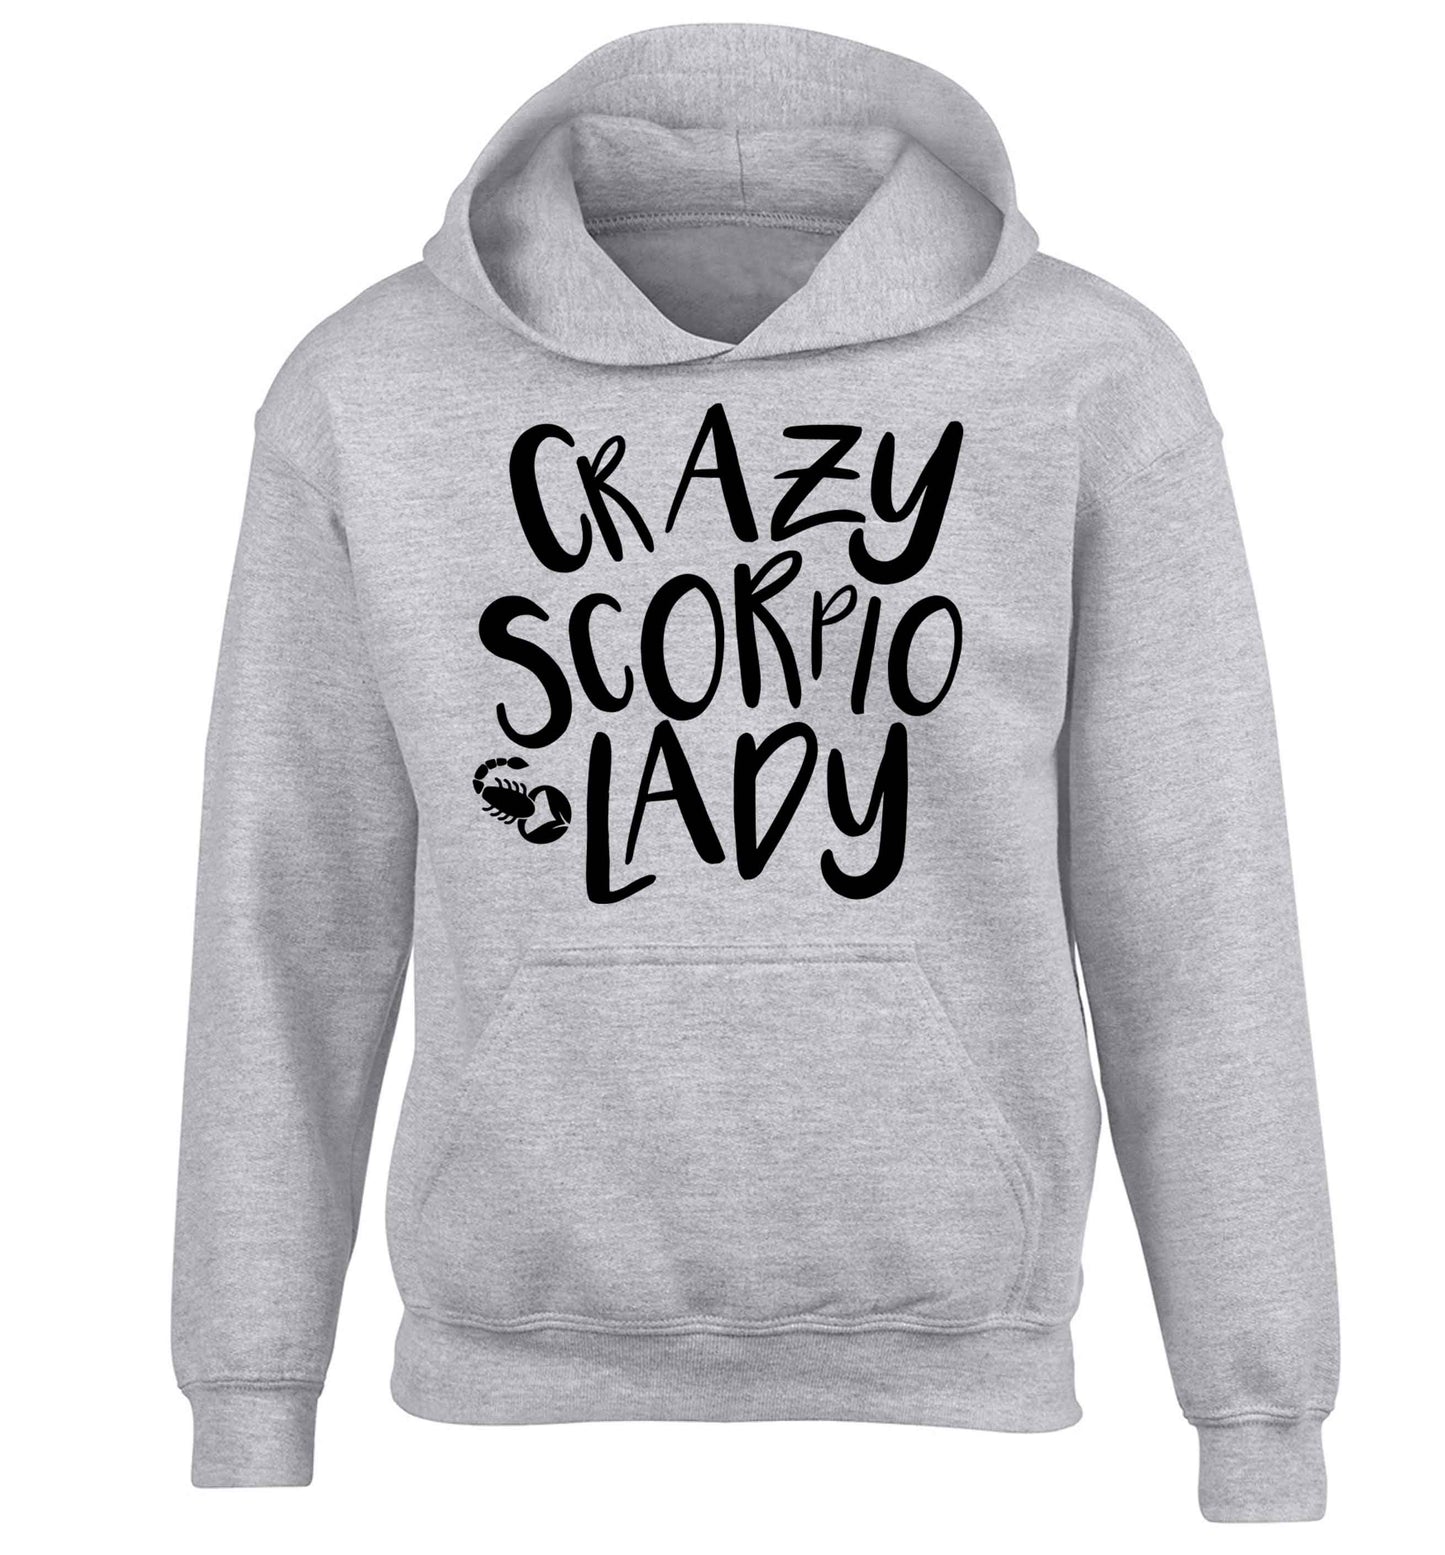 Crazy scorpio lady children's grey hoodie 12-13 Years